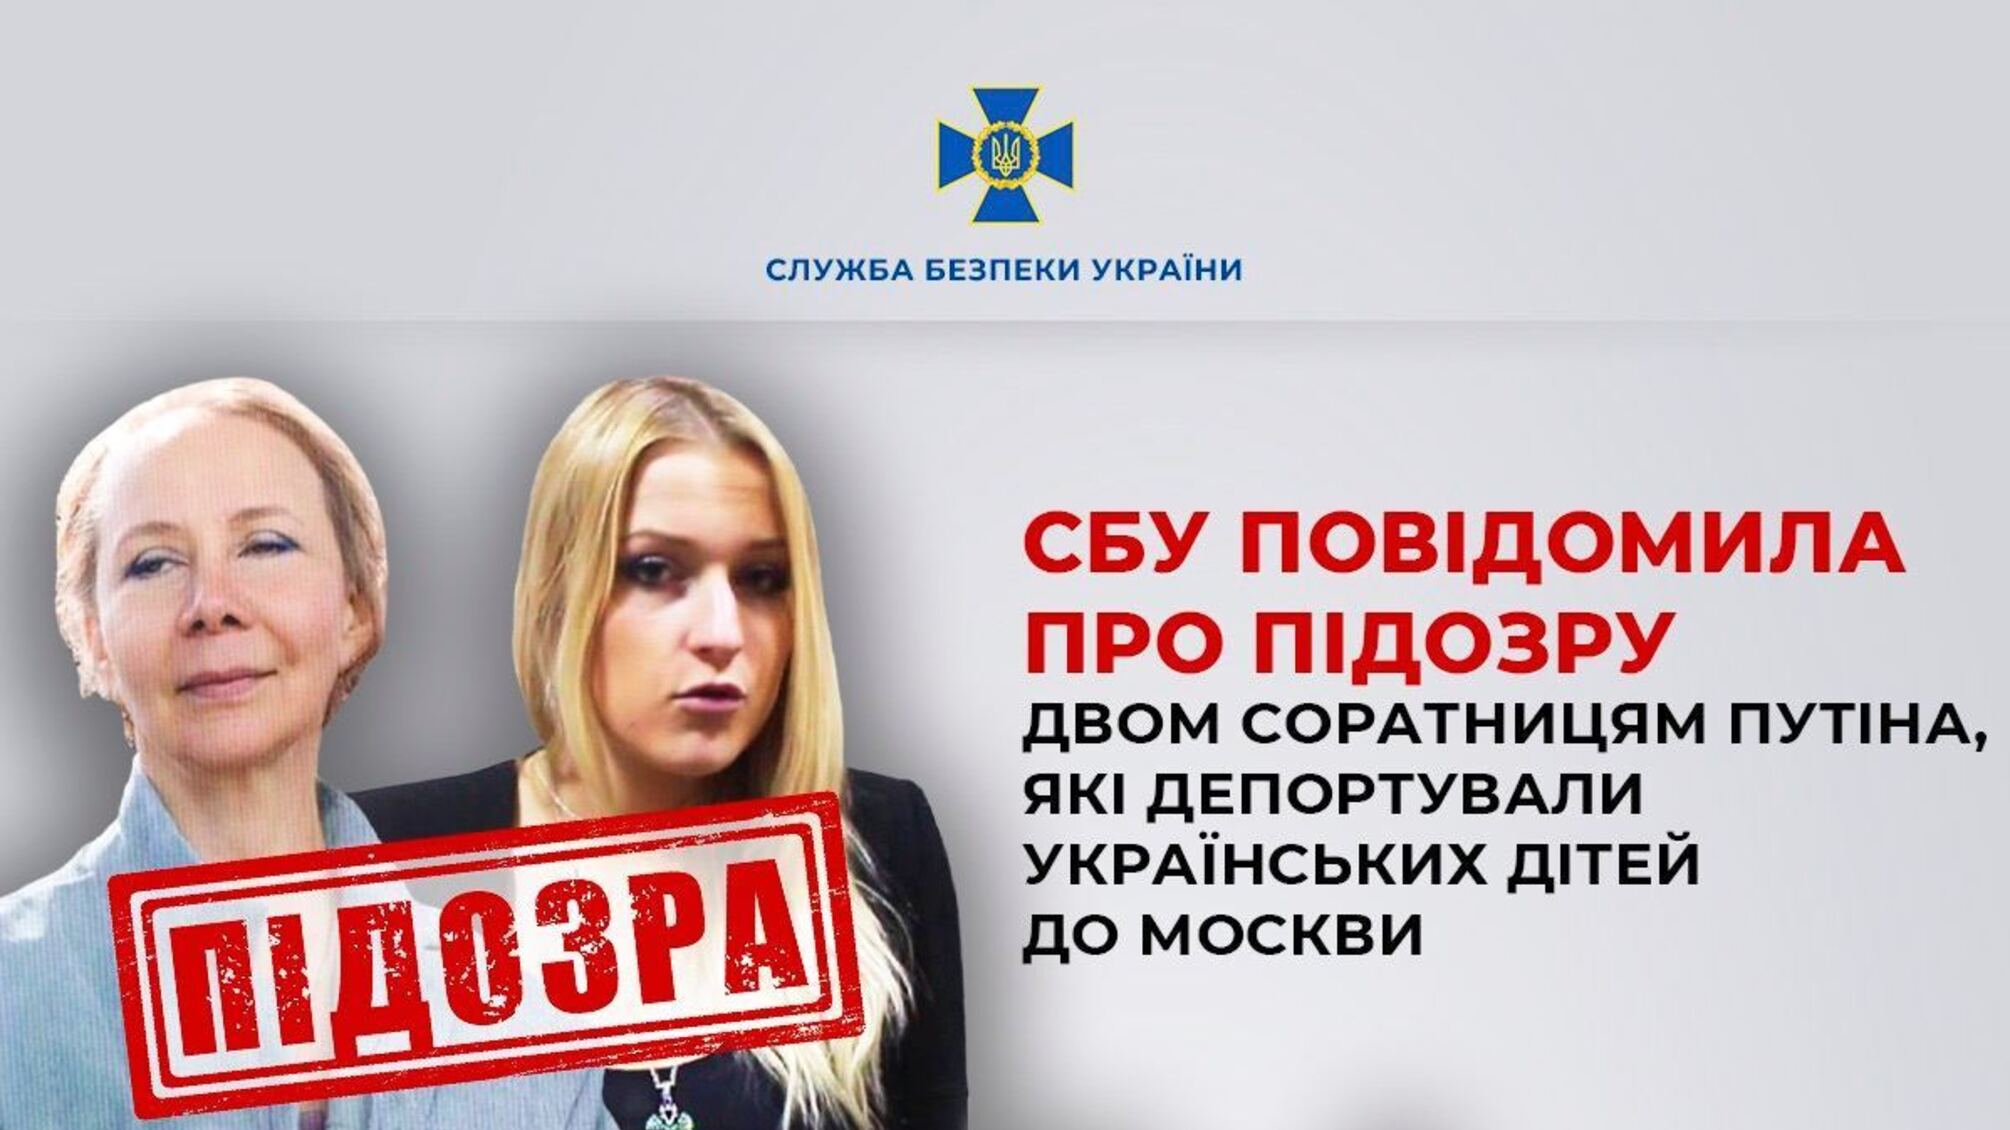 Депортировали украинских детей в Москву: СБУ сообщила о подозрении двум соратницам путина